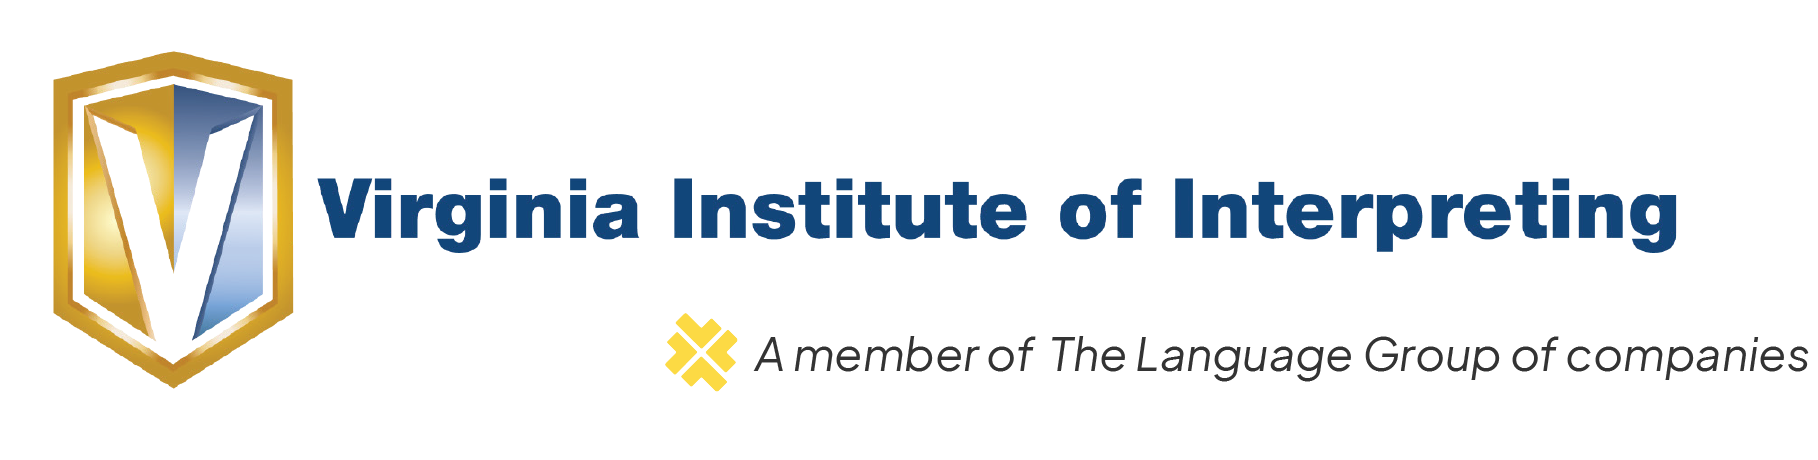 Virginia Institute of Interpreting